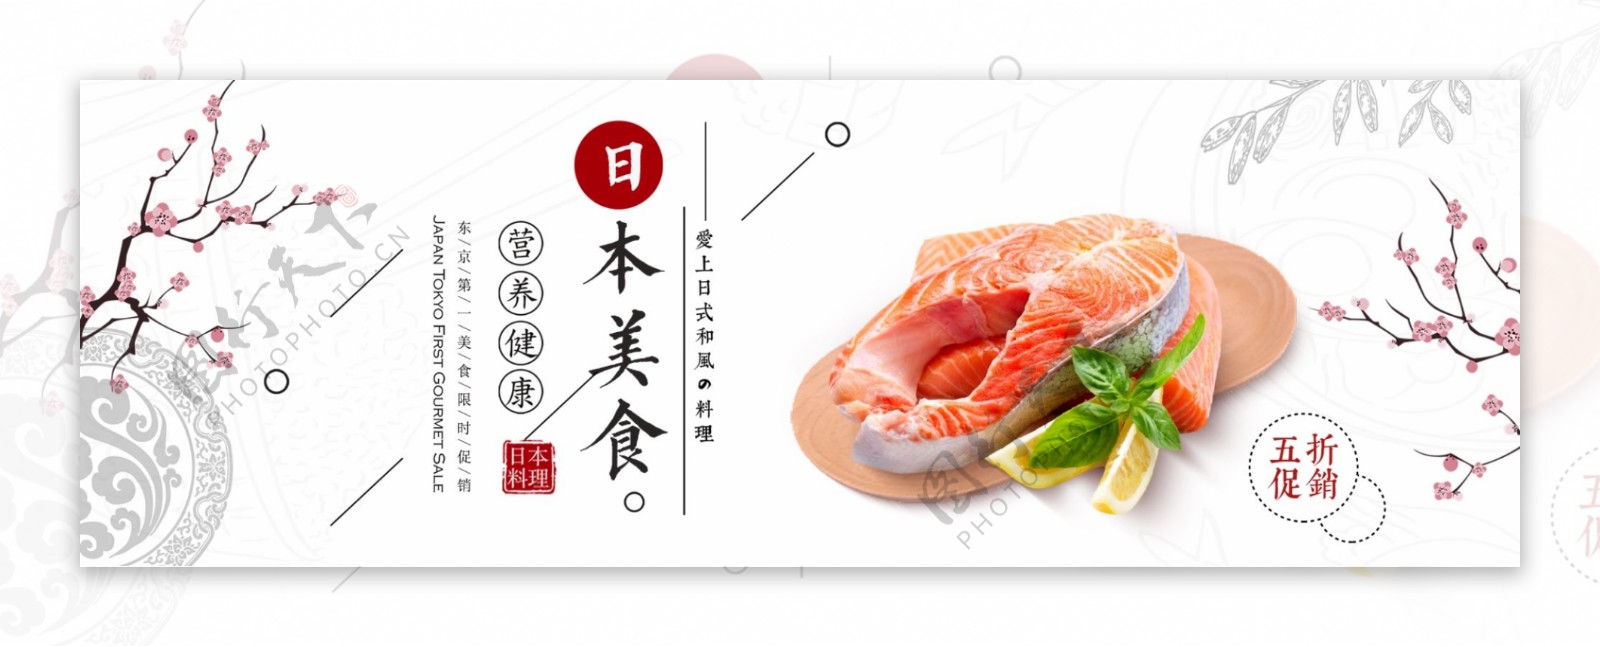 红色简约日本美食寿司海鲜电商banner淘宝海报